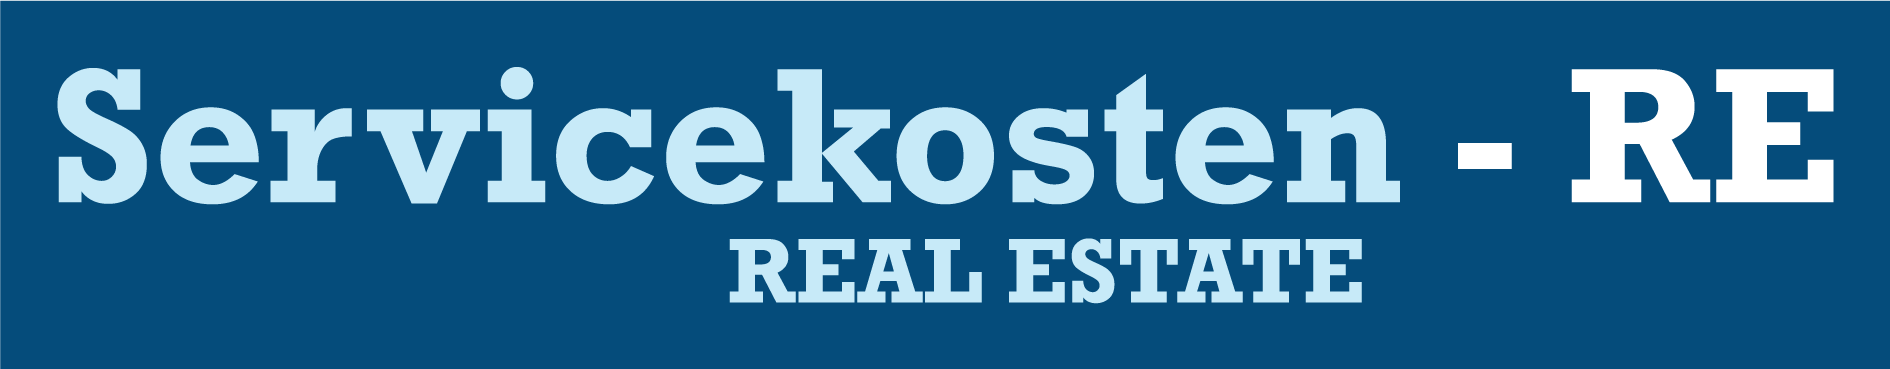 Logo-Servicekosten-RE-Website-Blauw